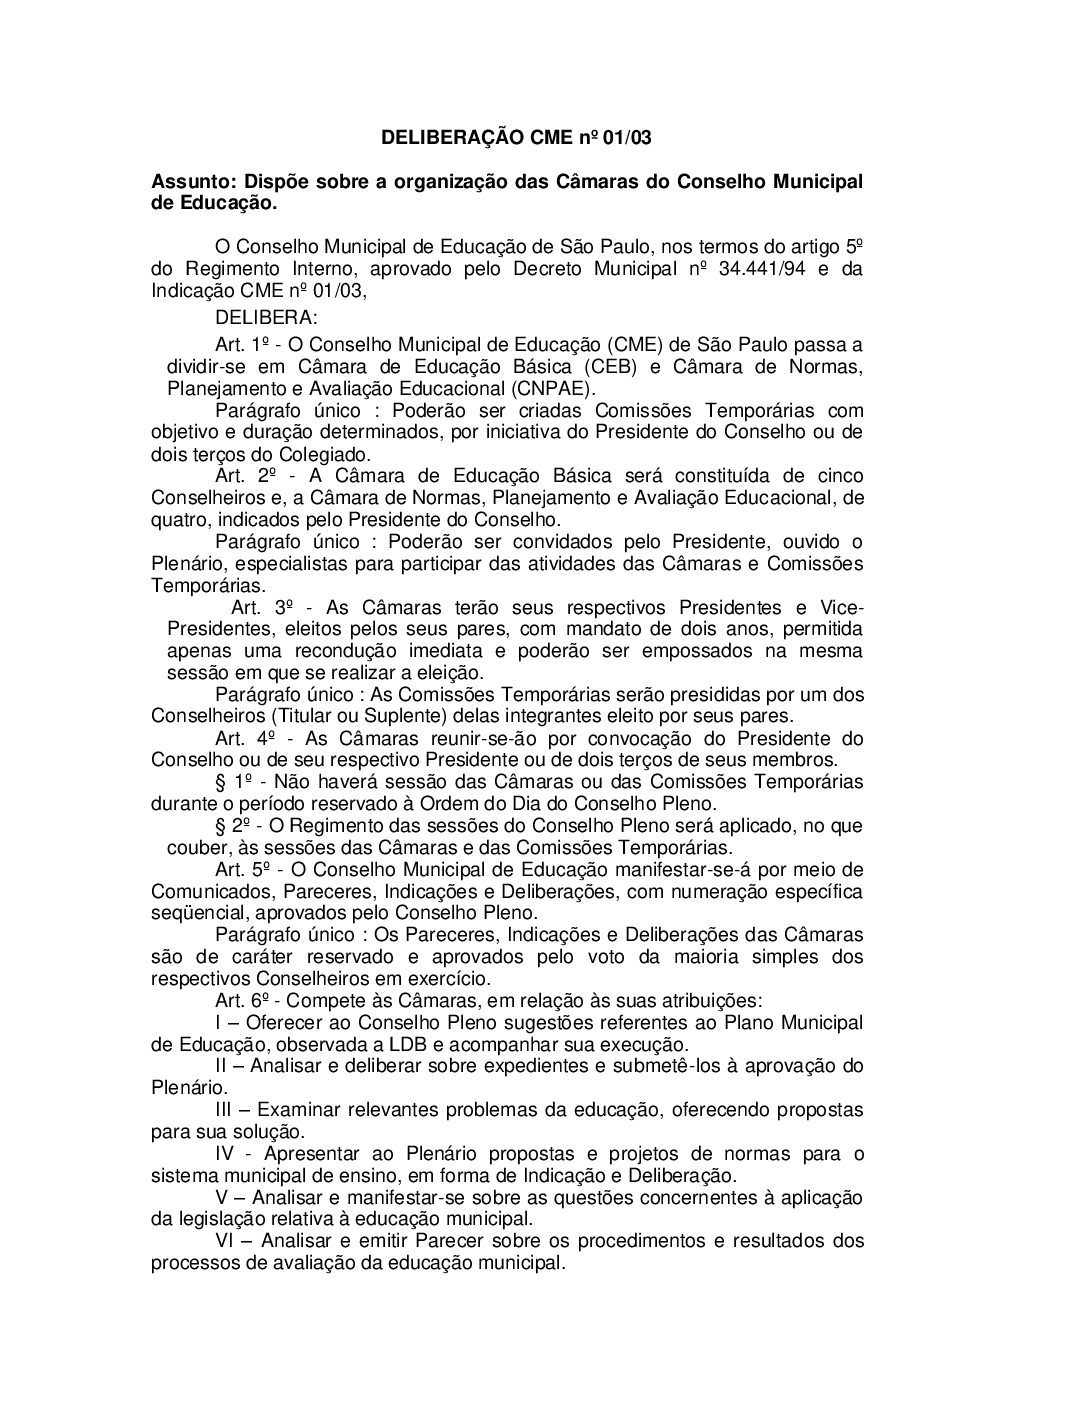 Deliberação CME nº 01/2003 -  Dispõe sobre a organização das Câmaras do Conselho Municipal de Educação